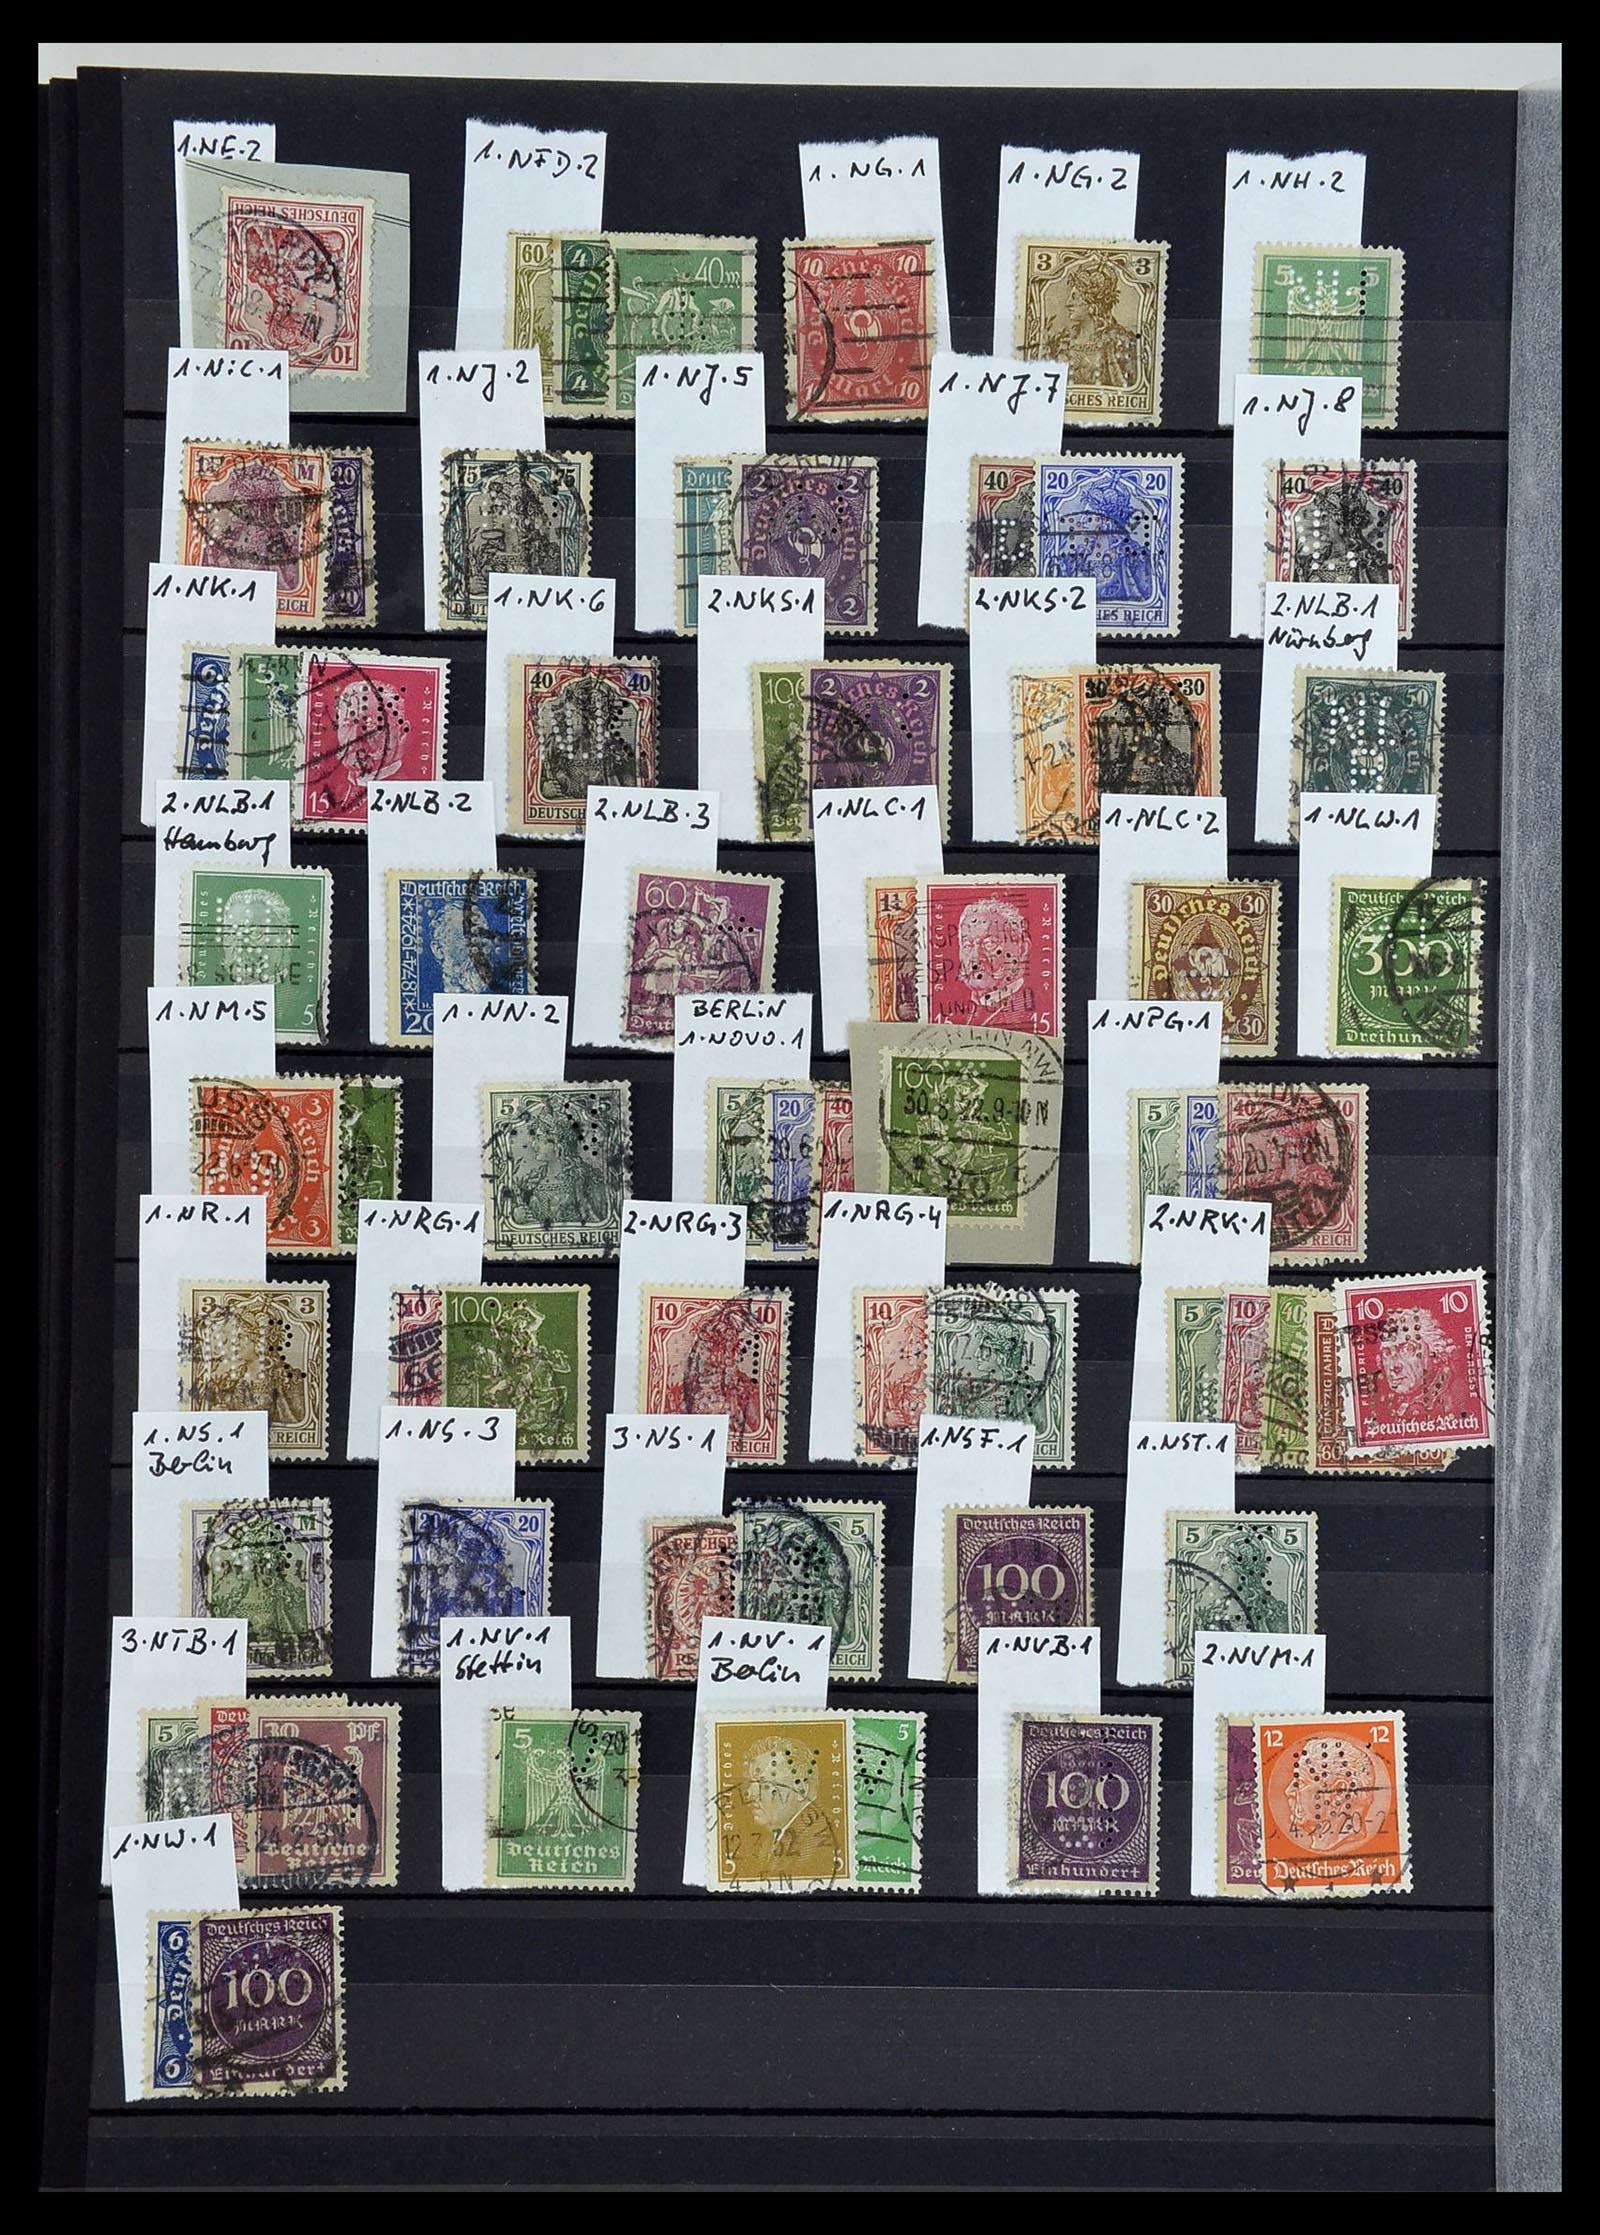 34432 018 - Stamp Collection 34432 German Reich perfins 1900-1933.